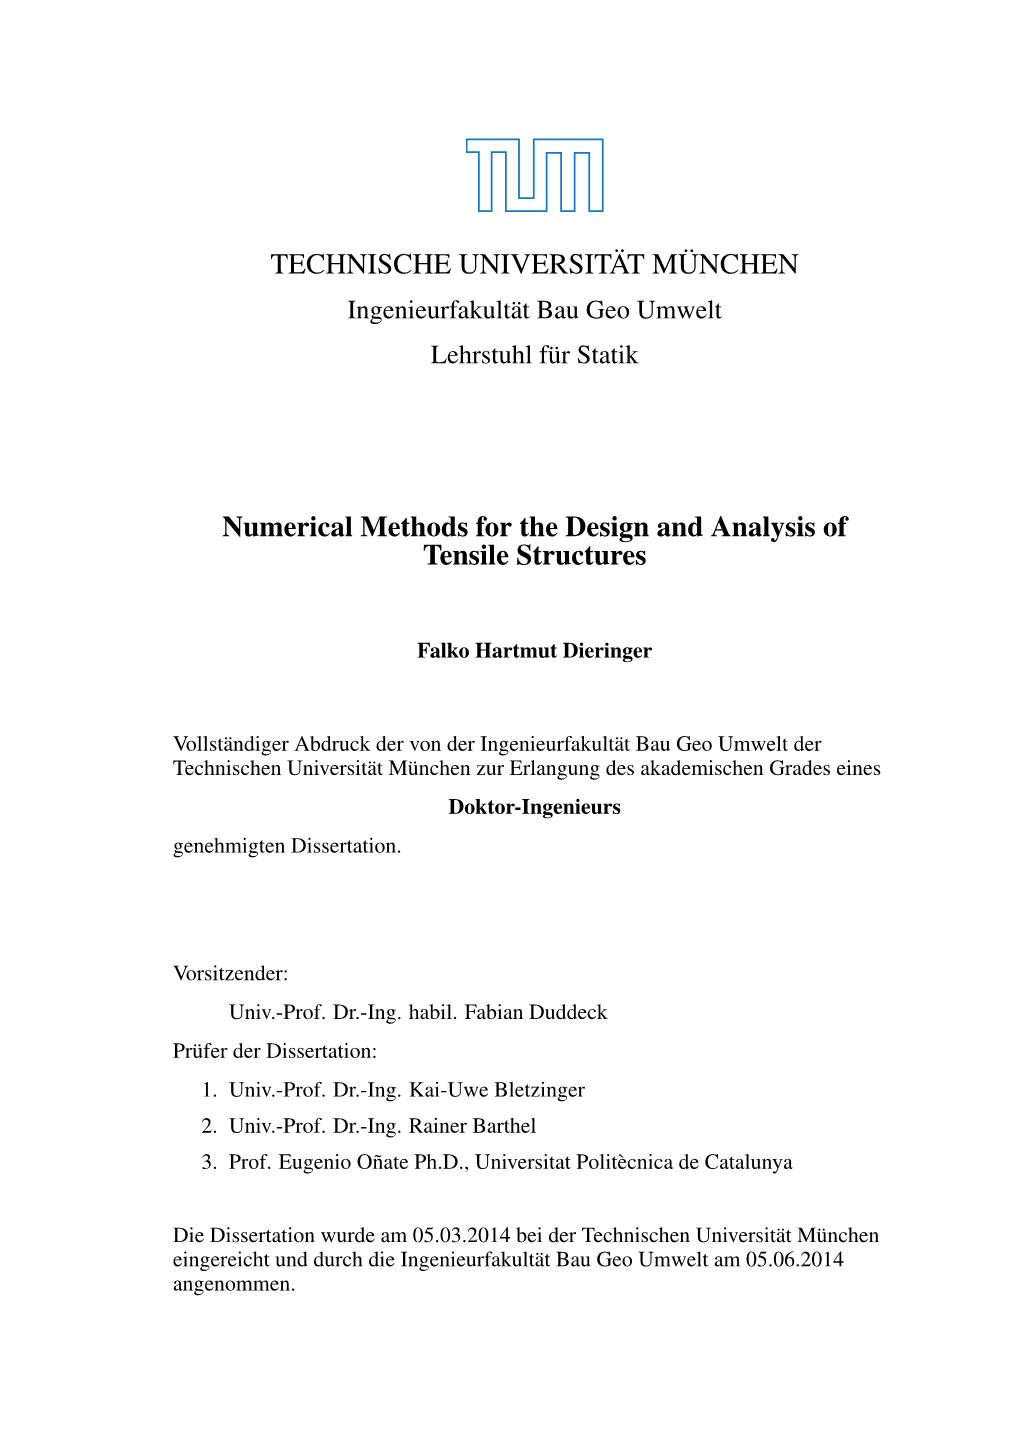 TECHNISCHE UNIVERSITÄT MÜNCHEN Numerical Methods For